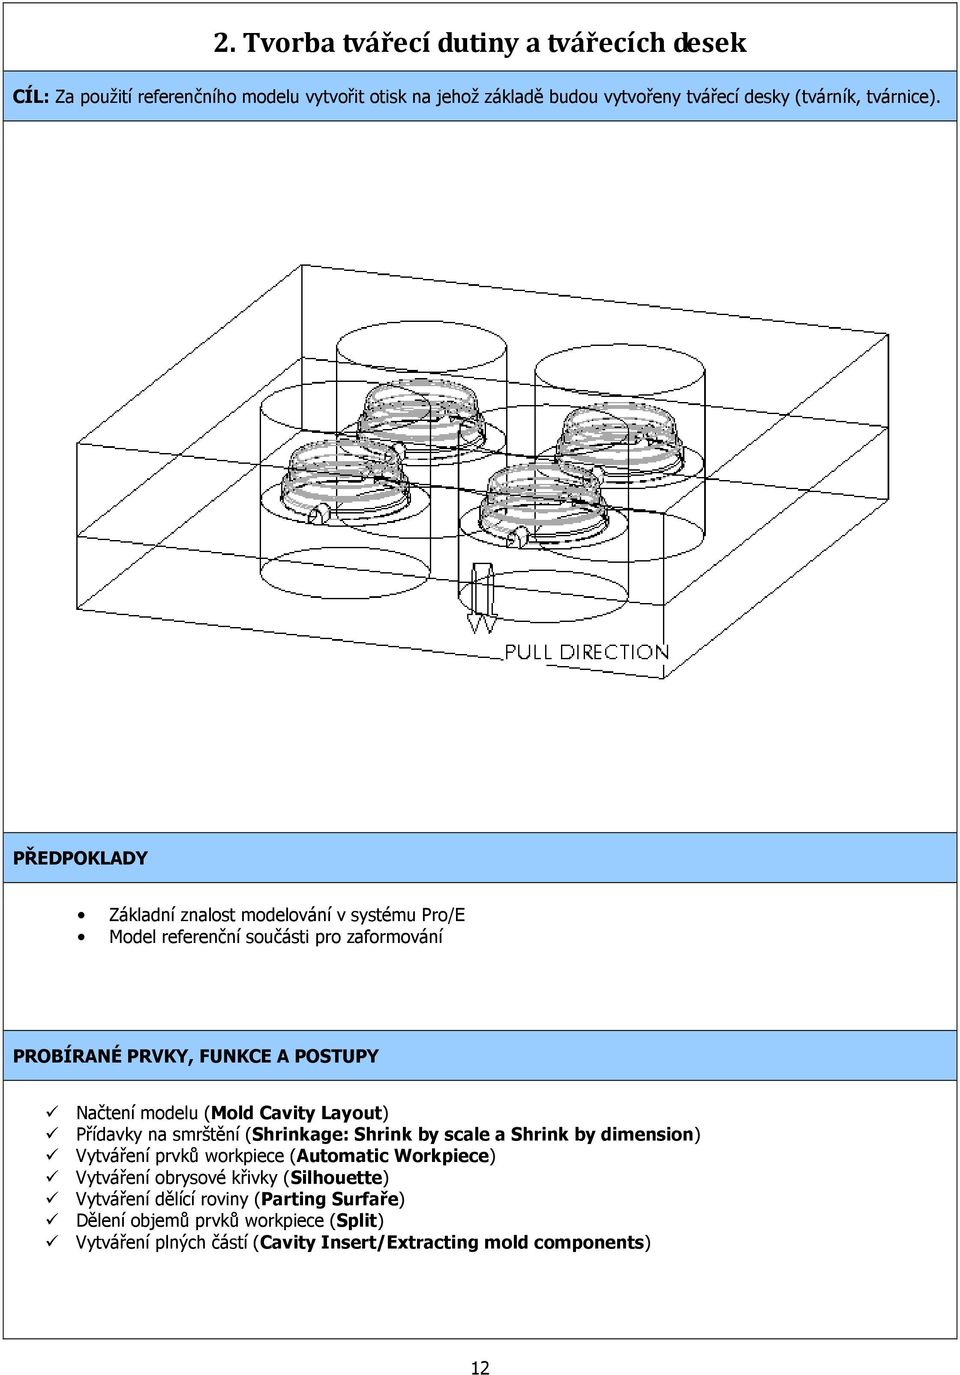 PŘEDPOKLADY Základní znalost modelování v systému Pro/E Model referenční součásti pro zaformování PROBÍRANÉ PRVKY, FUNKCE A POSTUPY Načtení modelu (Mold Cavity